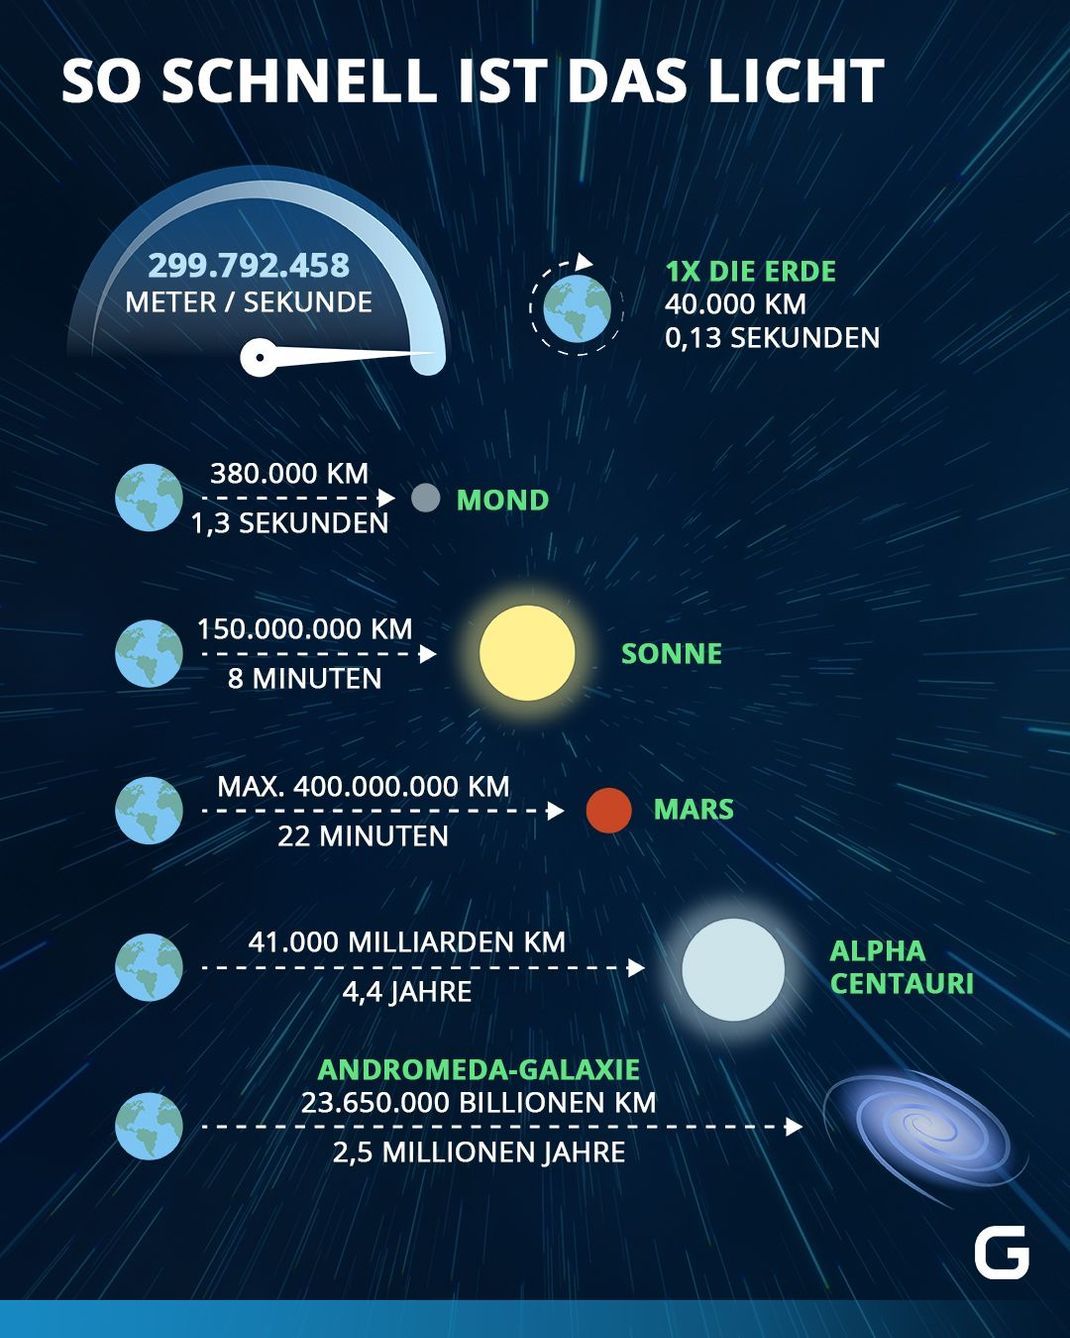 Die Lichtgeschwindigkeit beträgt 299.792.458 Meter pro Sekunde. Wie lange bräuchte man zu anderen Himmelskörpern?